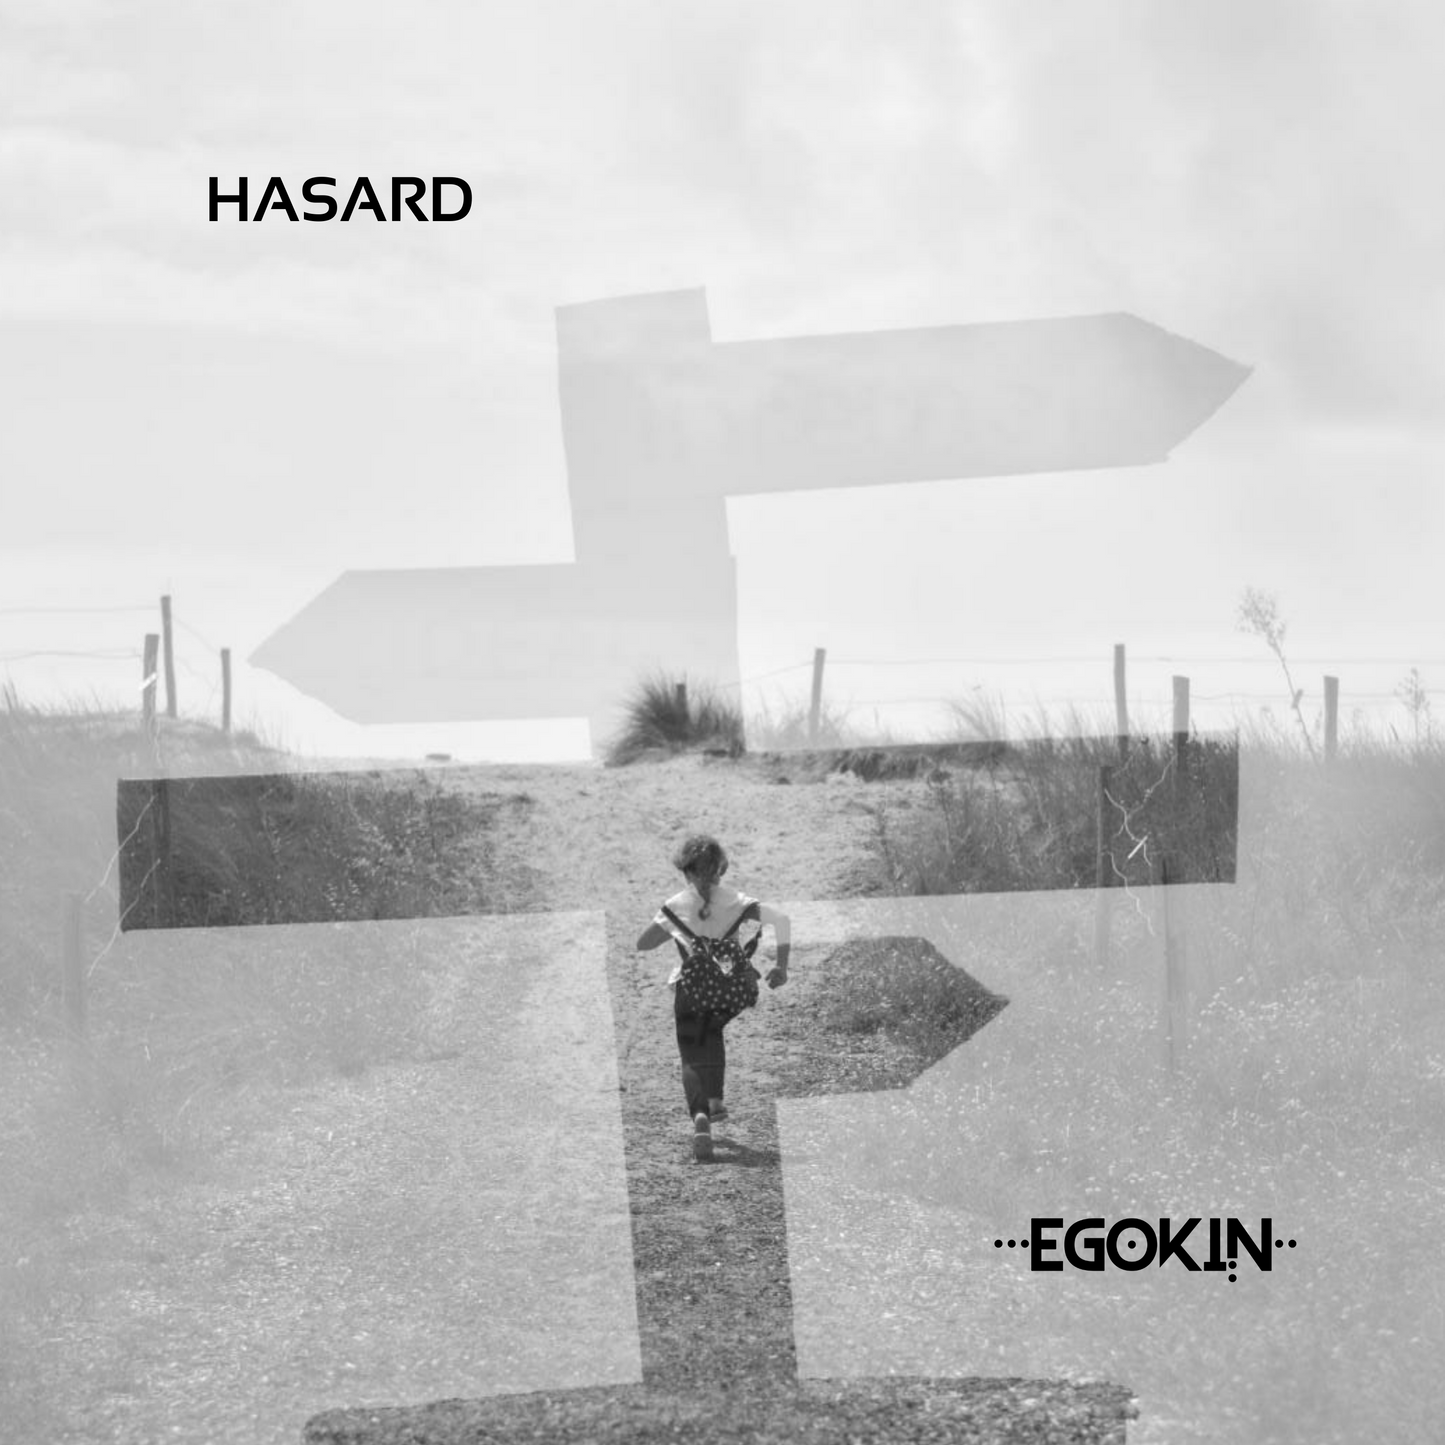 HASARD (Artwork) - EGOKIN